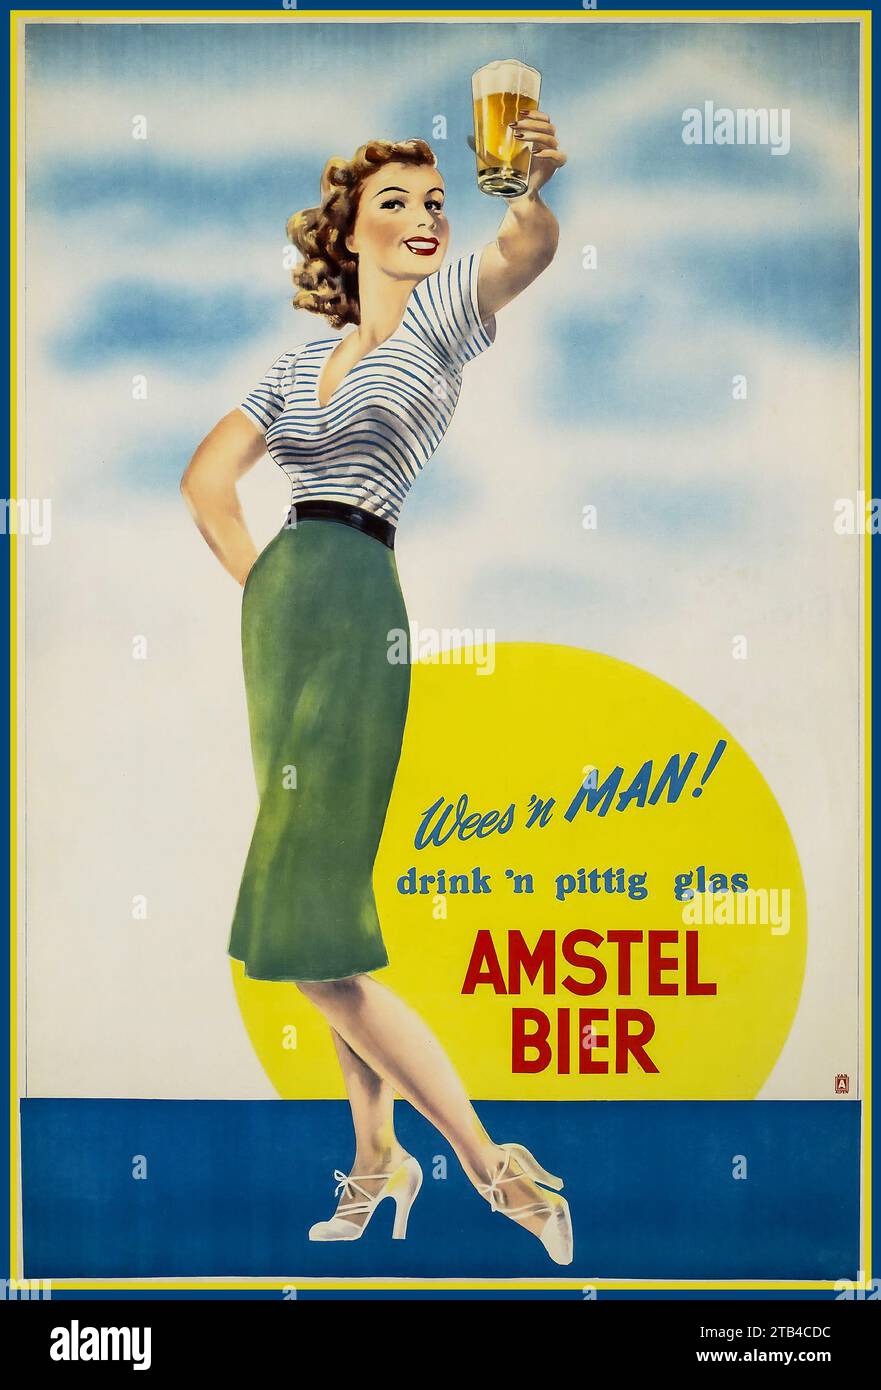 Vintage Beer Advertisement for Amstel Bier Holland 'Be a MAN ! drink a tasty glass of Amstel Beer' Holland Nederlands Stock Photo